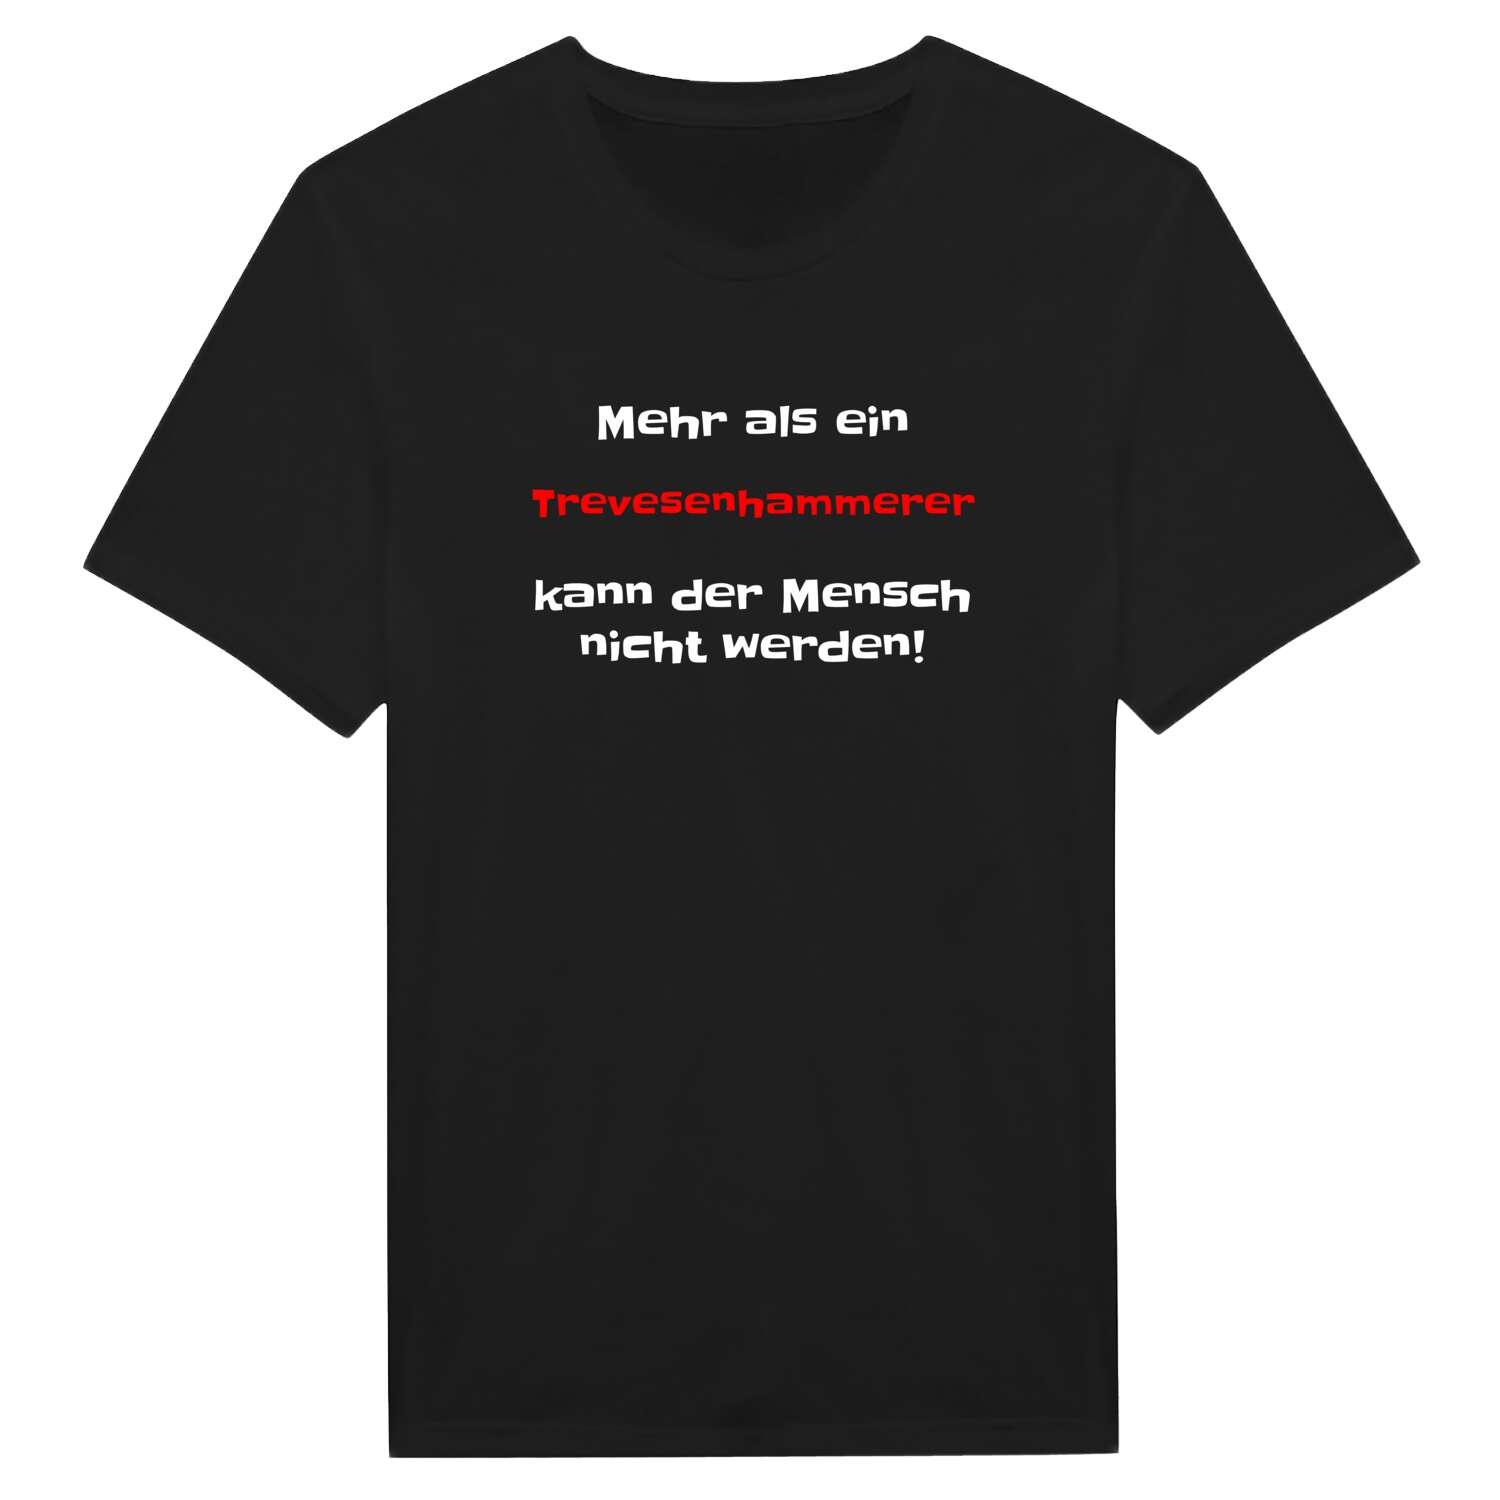 Trevesenhammer T-Shirt »Mehr als ein«